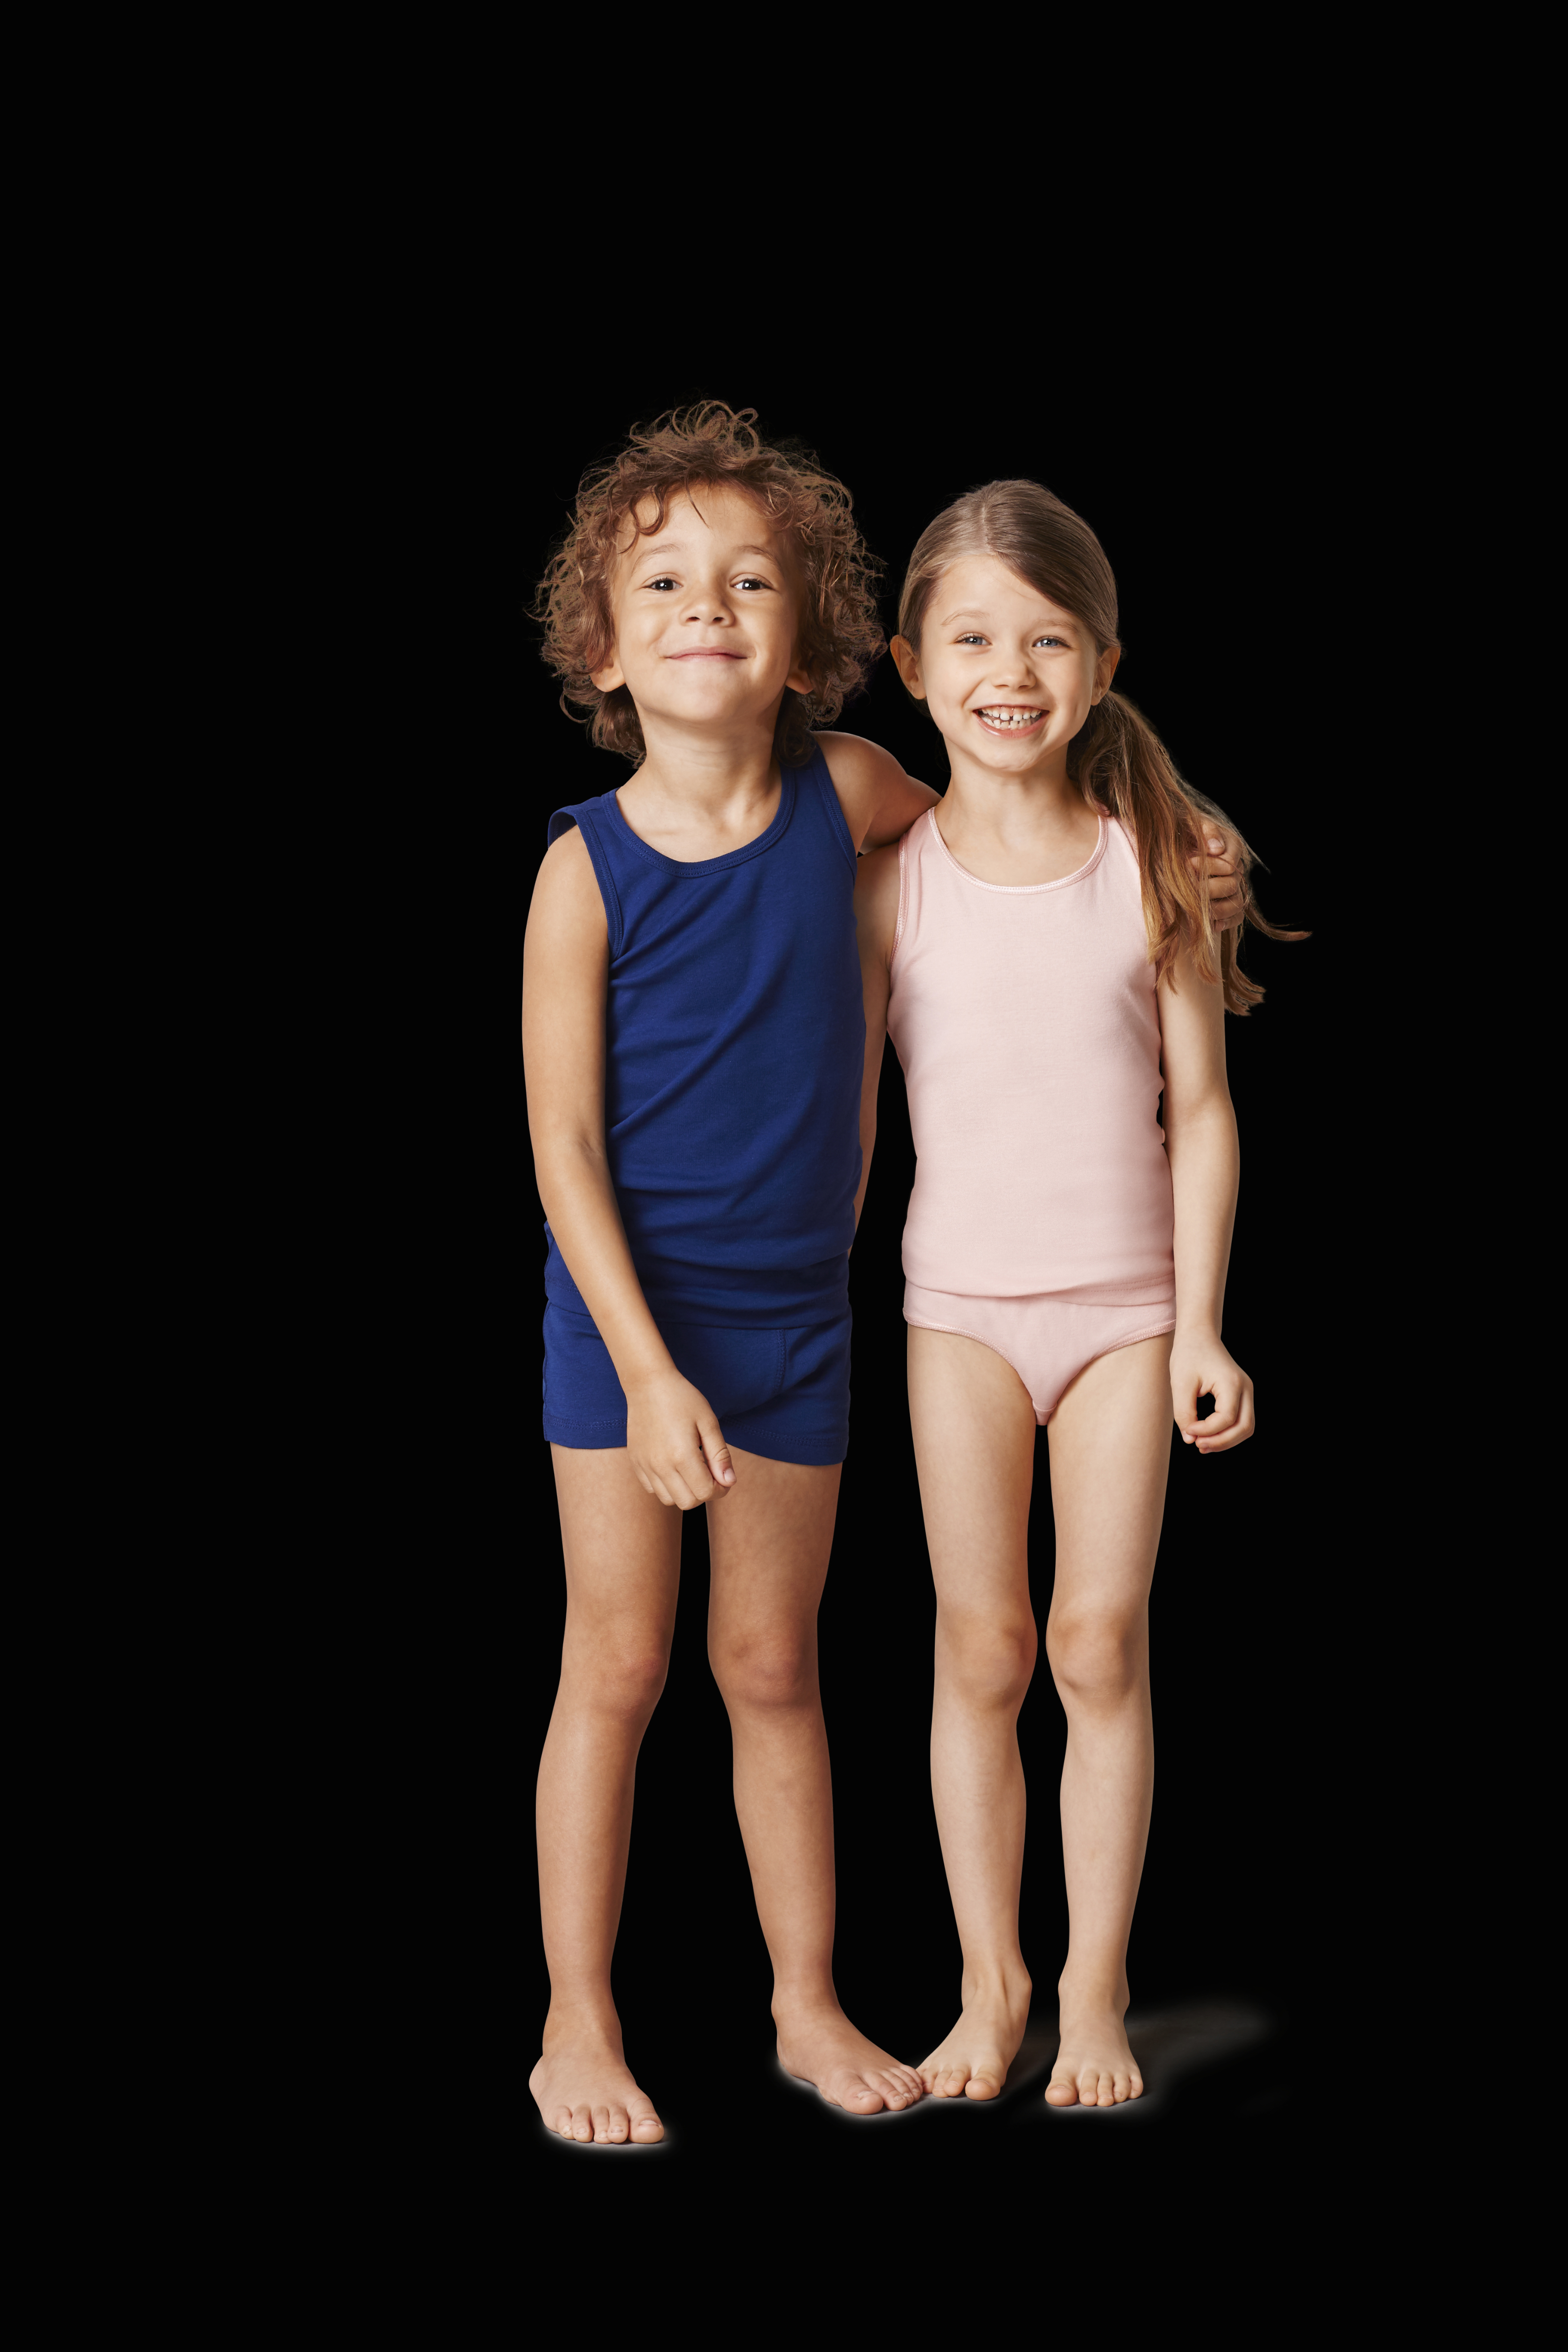 klædt til at følge øko-trend for børnetøj Salling Group